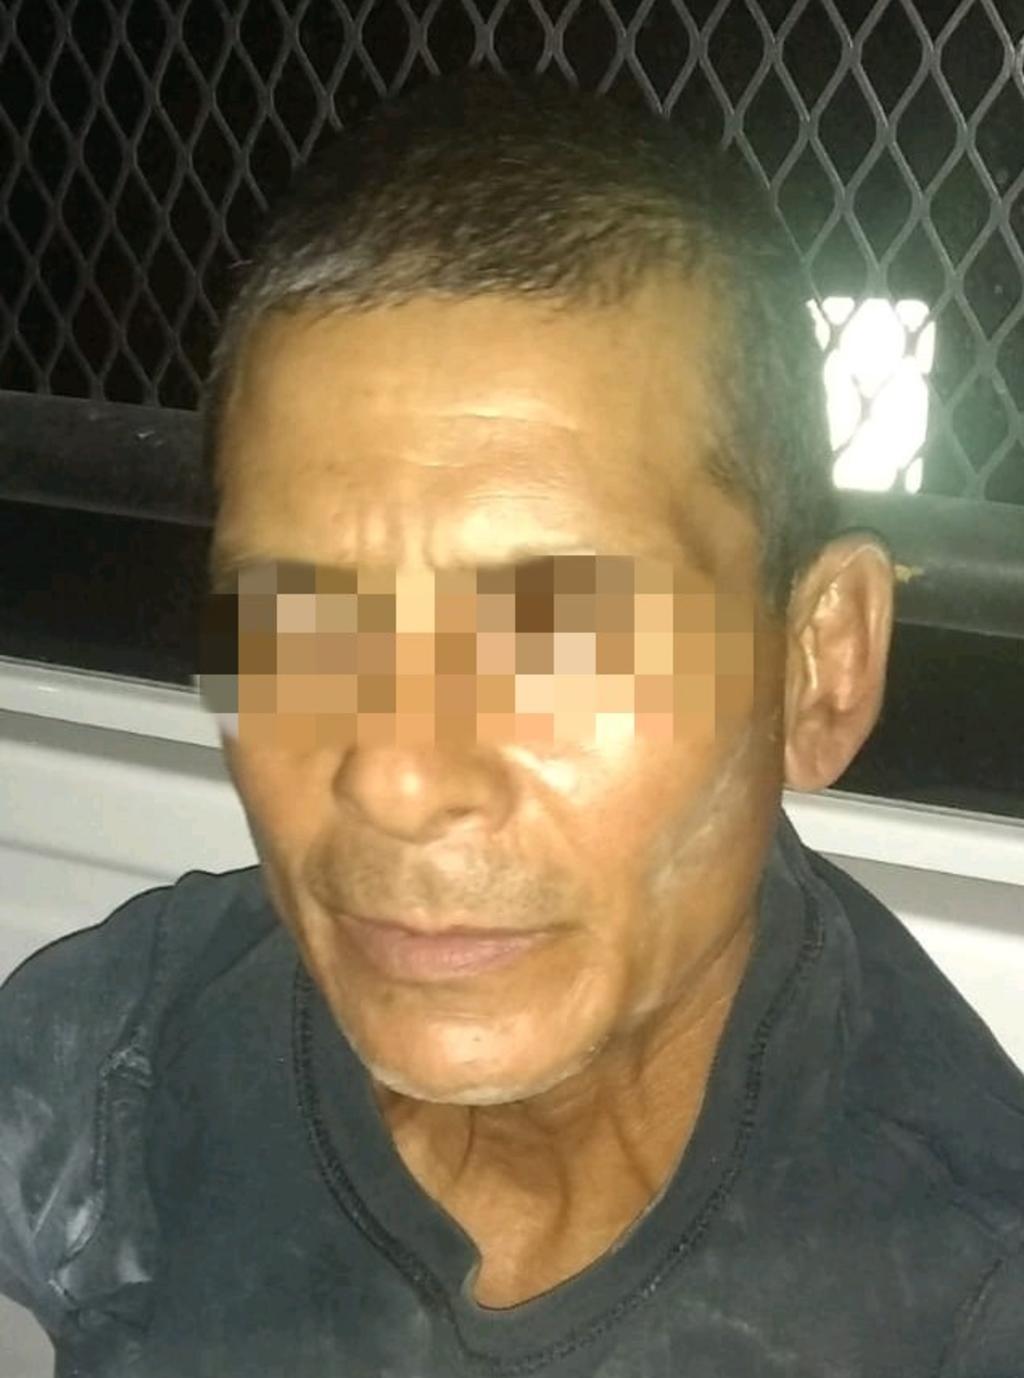 El individuo detenido fue identificado como Raúl “N” de 50 años de edad, quien dijo ser originario del Matamoros, Tamaulipas.
(EL SIGLO DE TORREÓN)